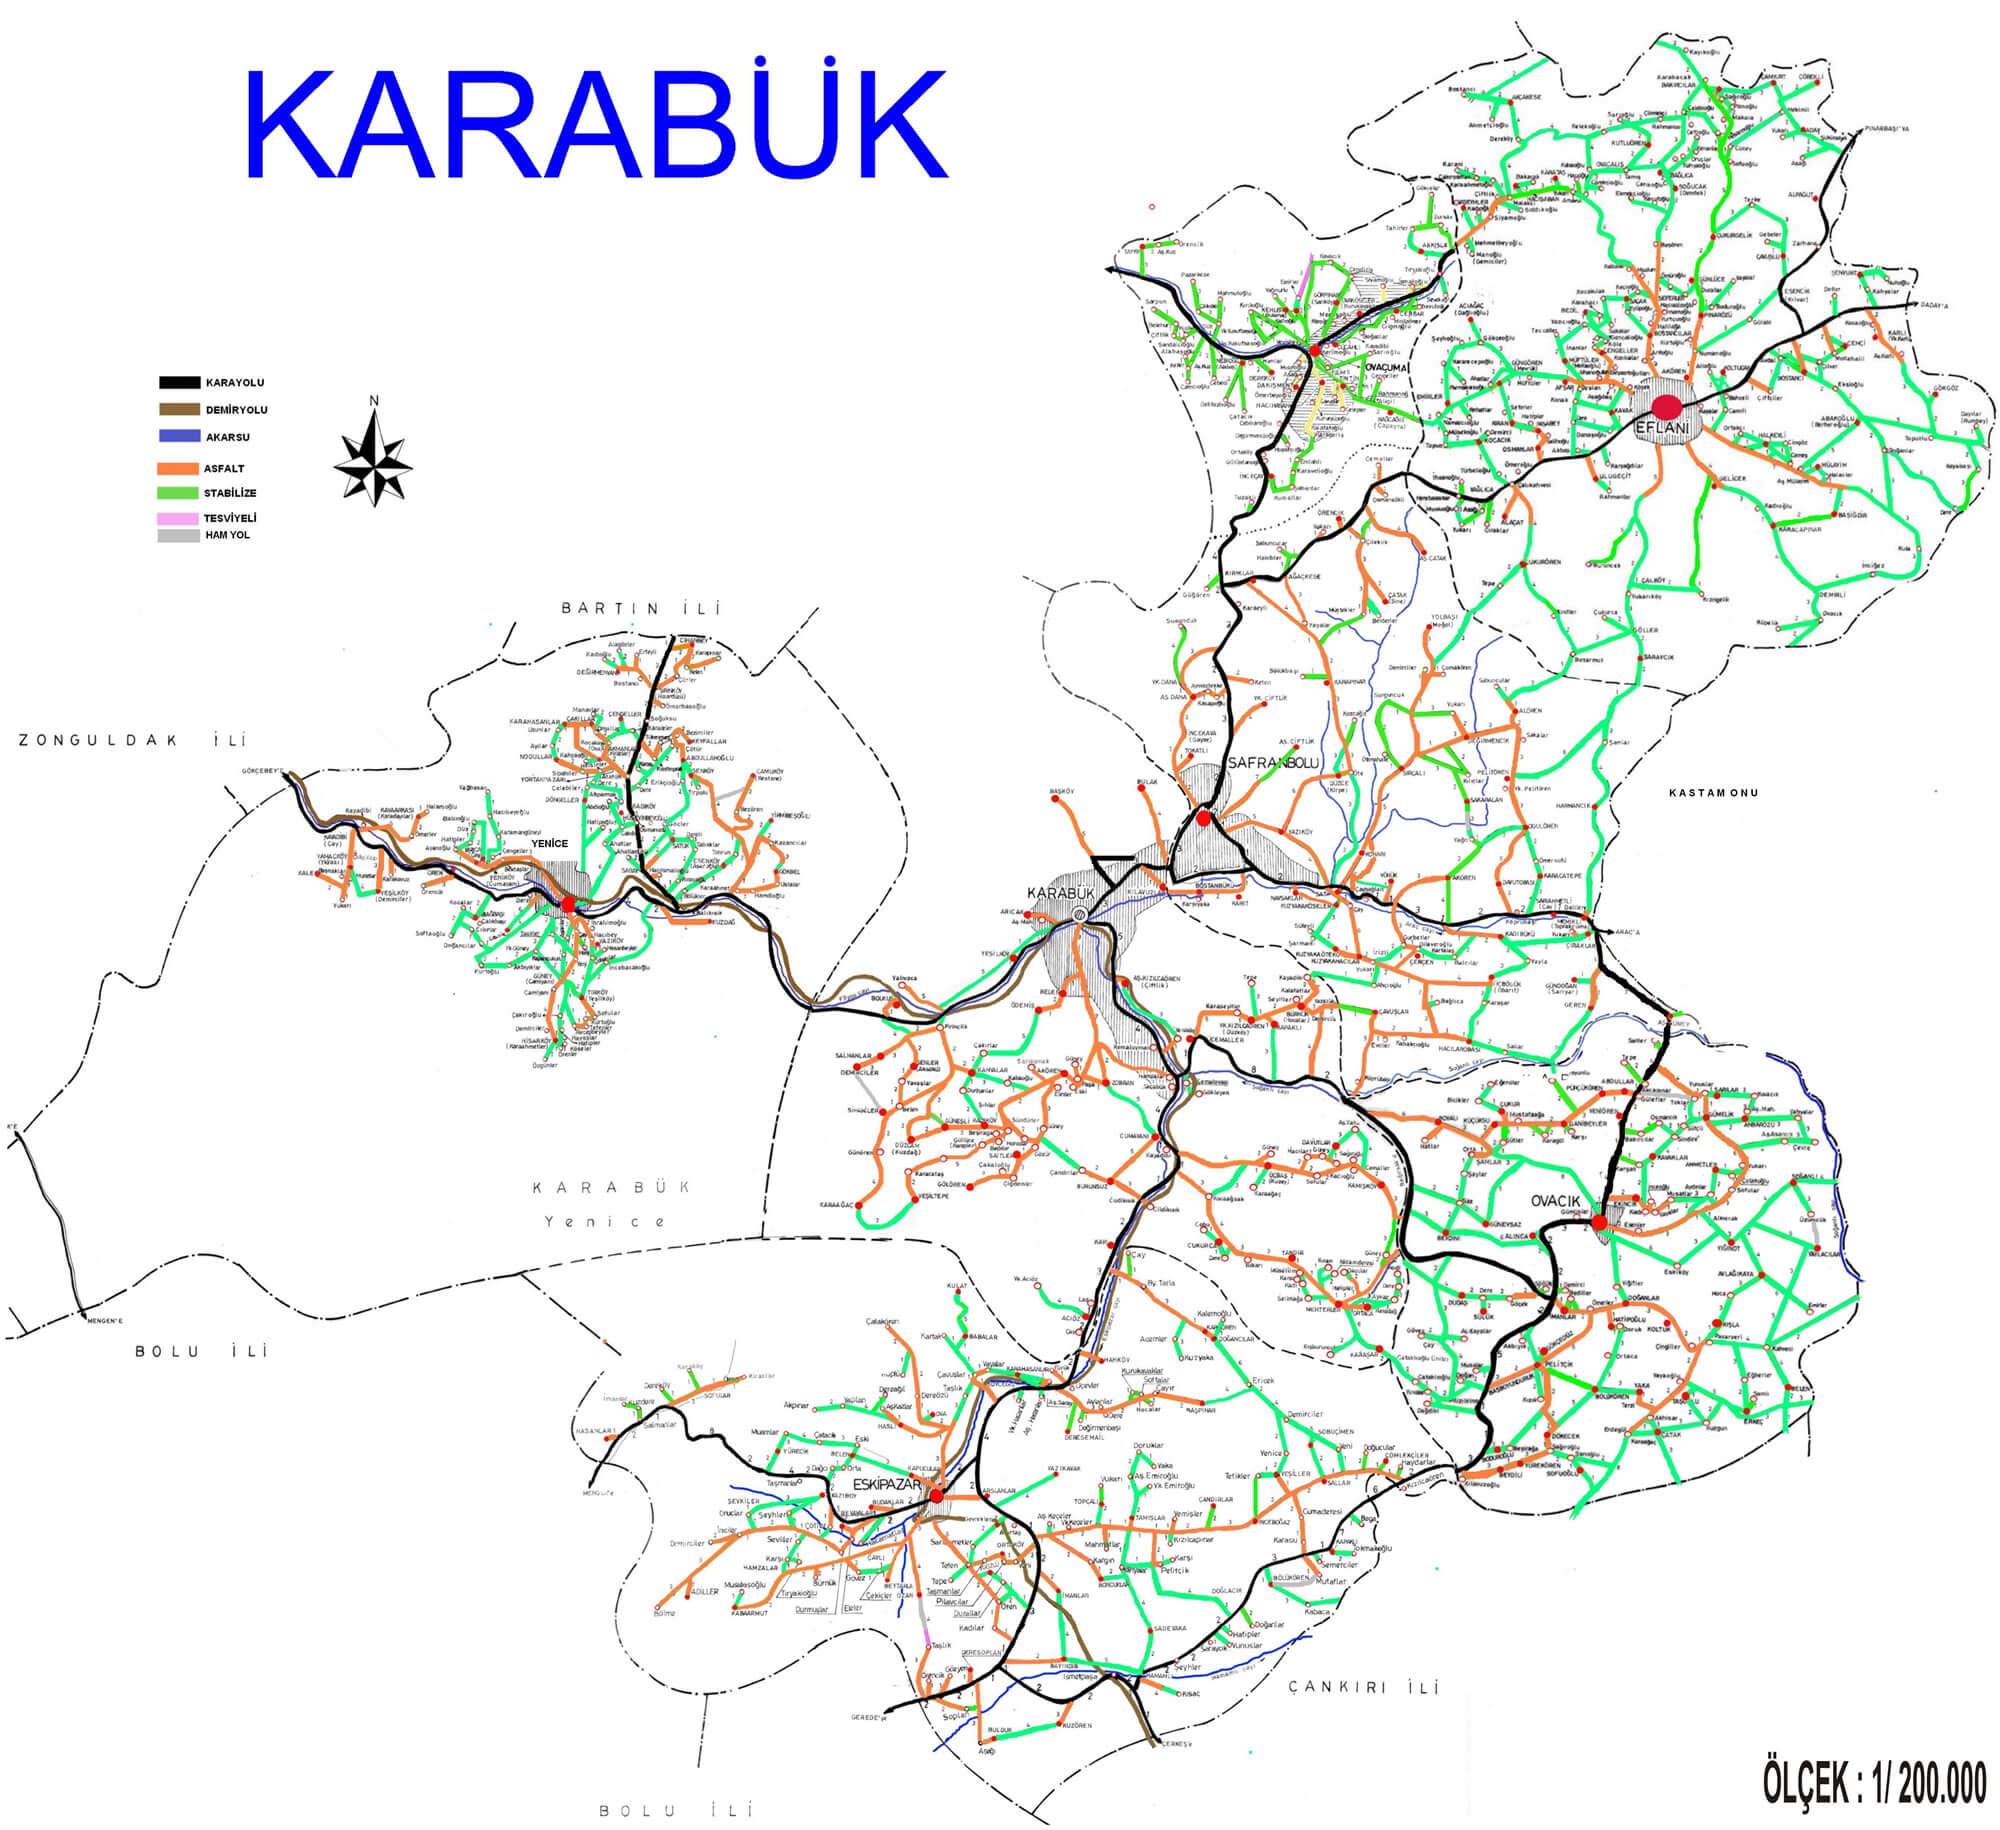 karabuk route plan